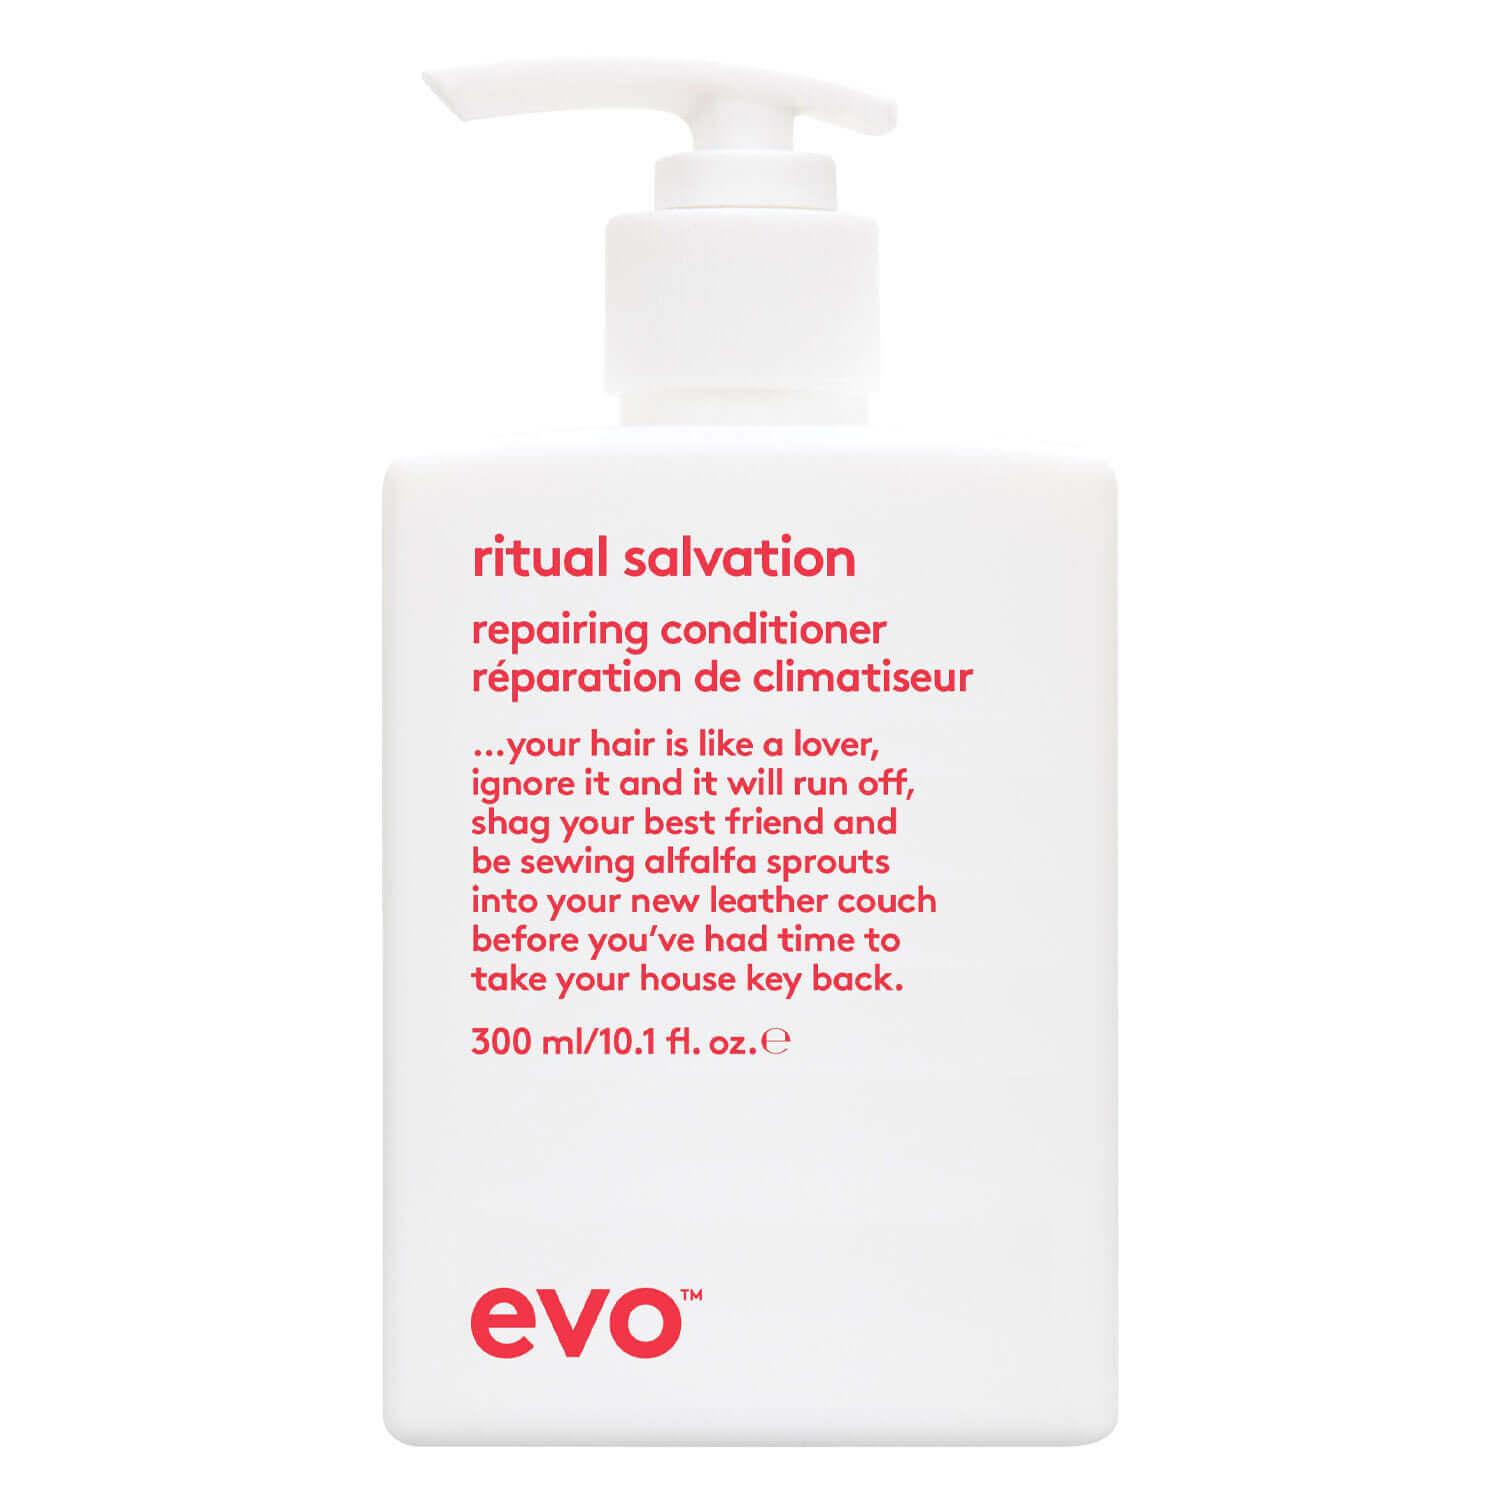 evo care - ritual salvation repairing conditioner